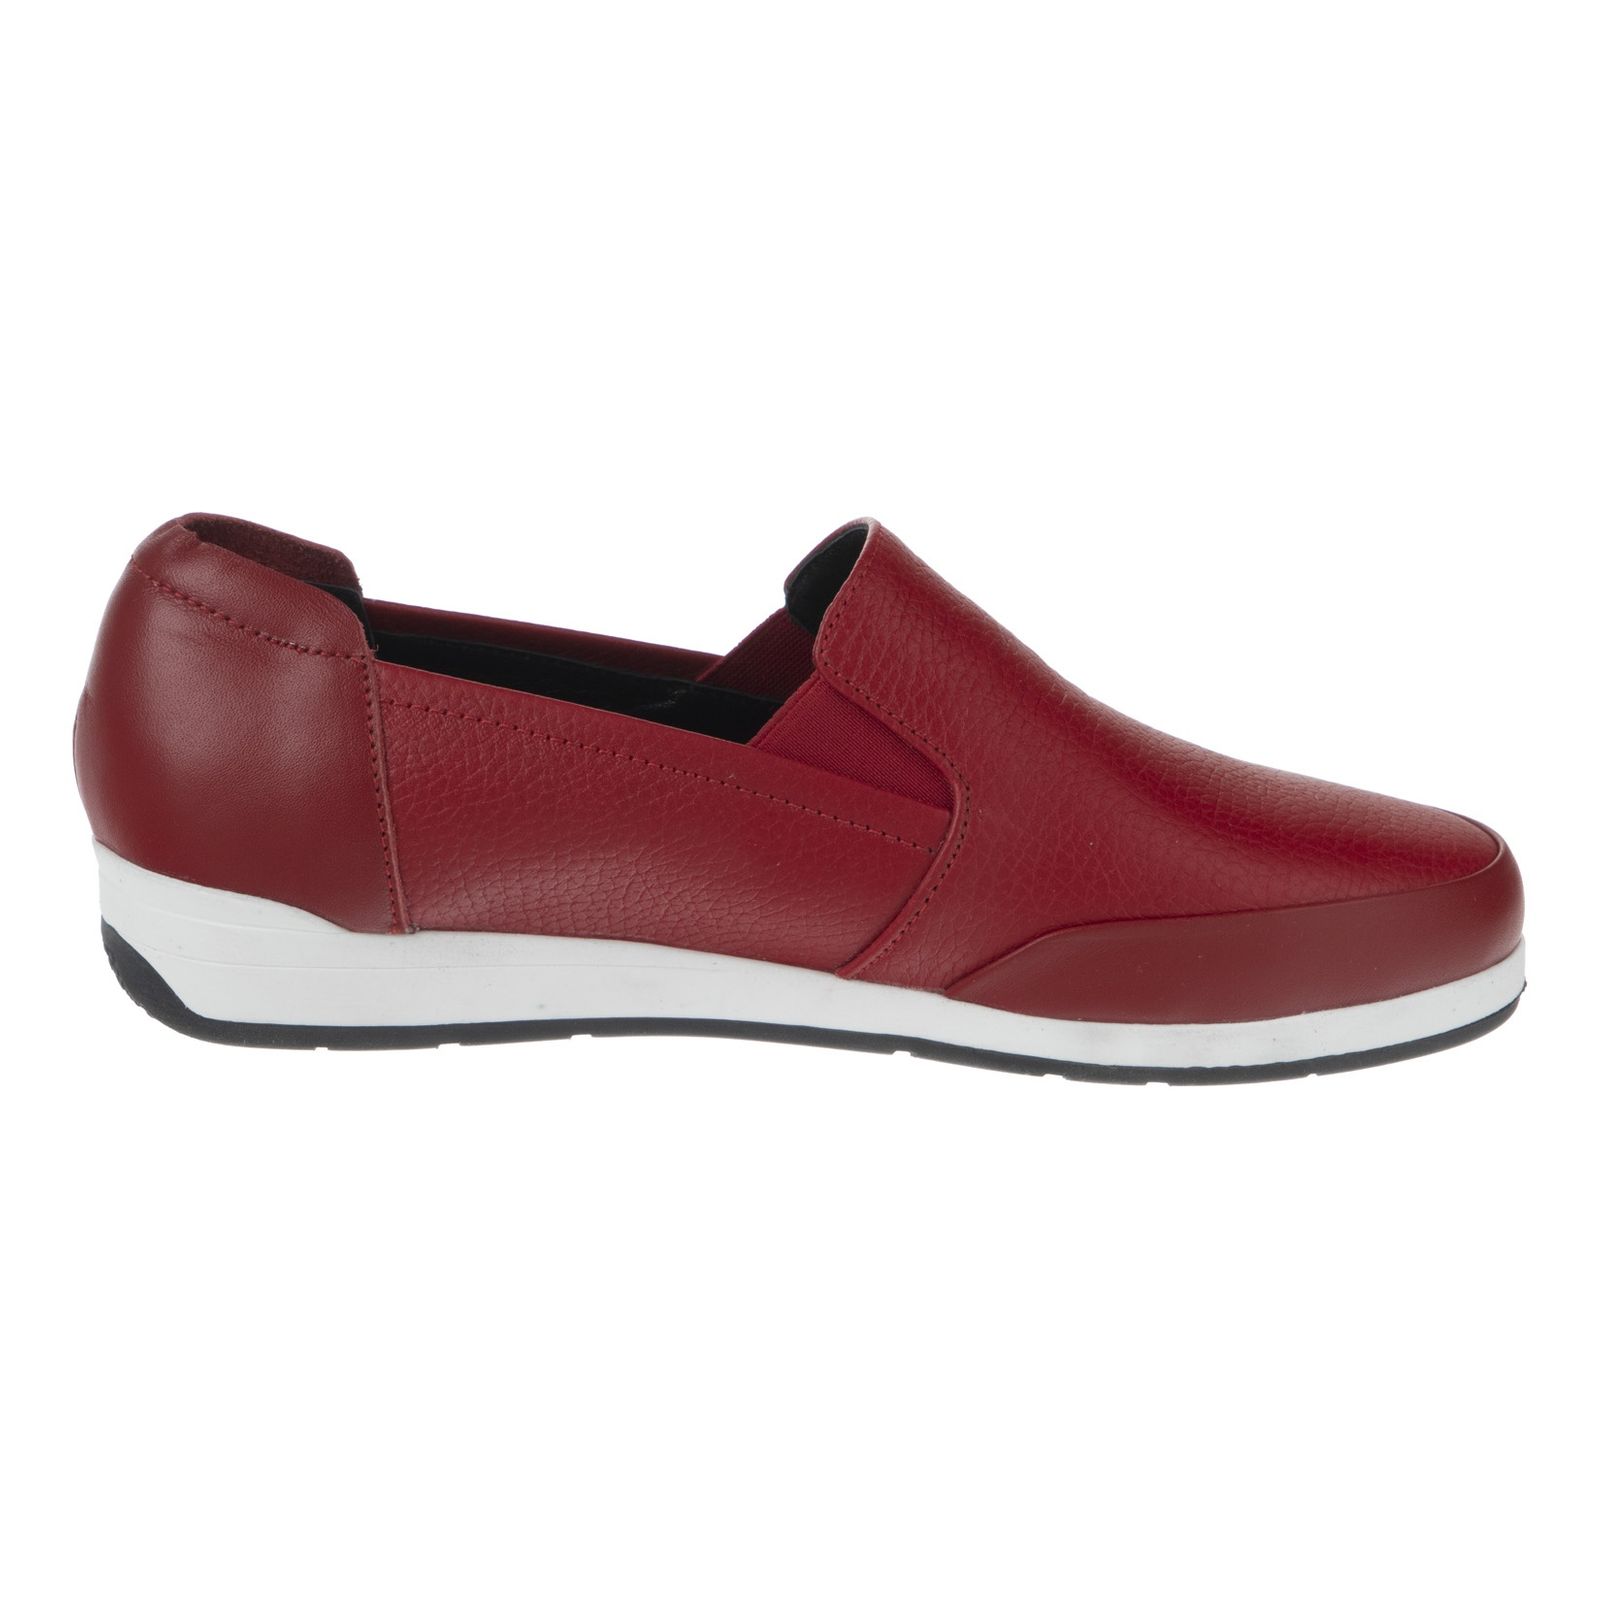 کفش روزمره زنانه شیفر مدل 5275A-102 - قرمز - 3